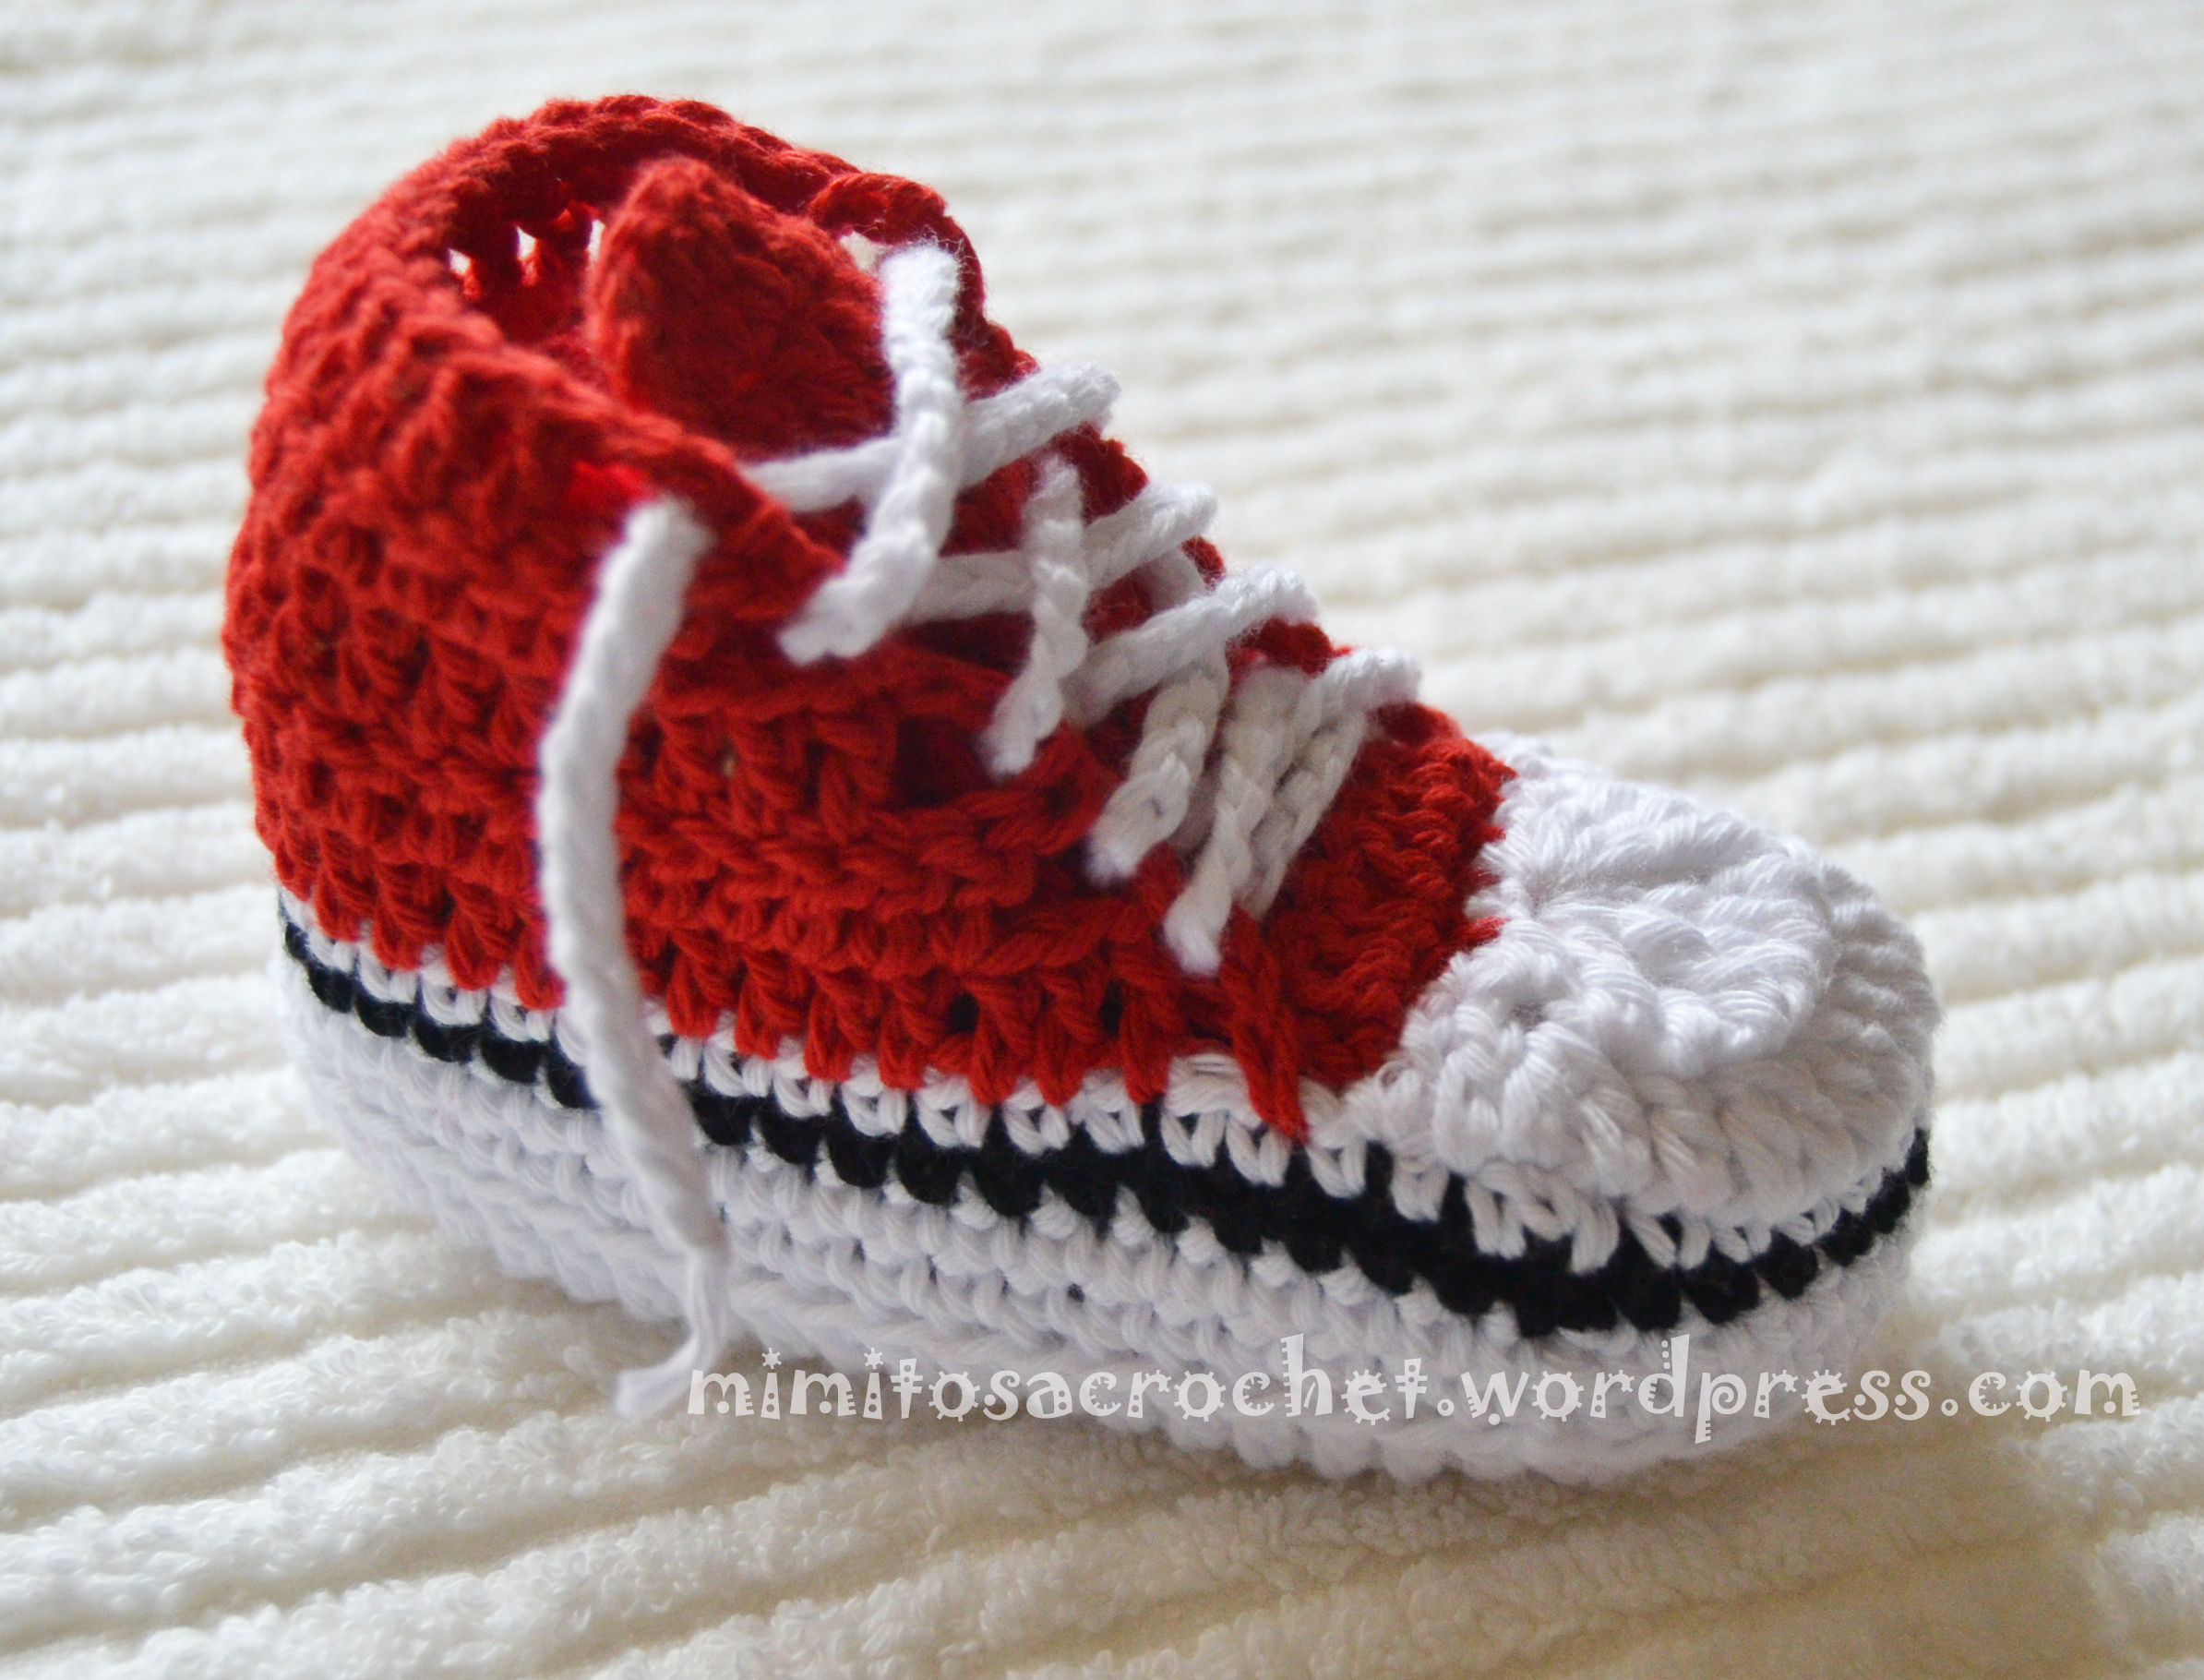 converse a crochet para bebe